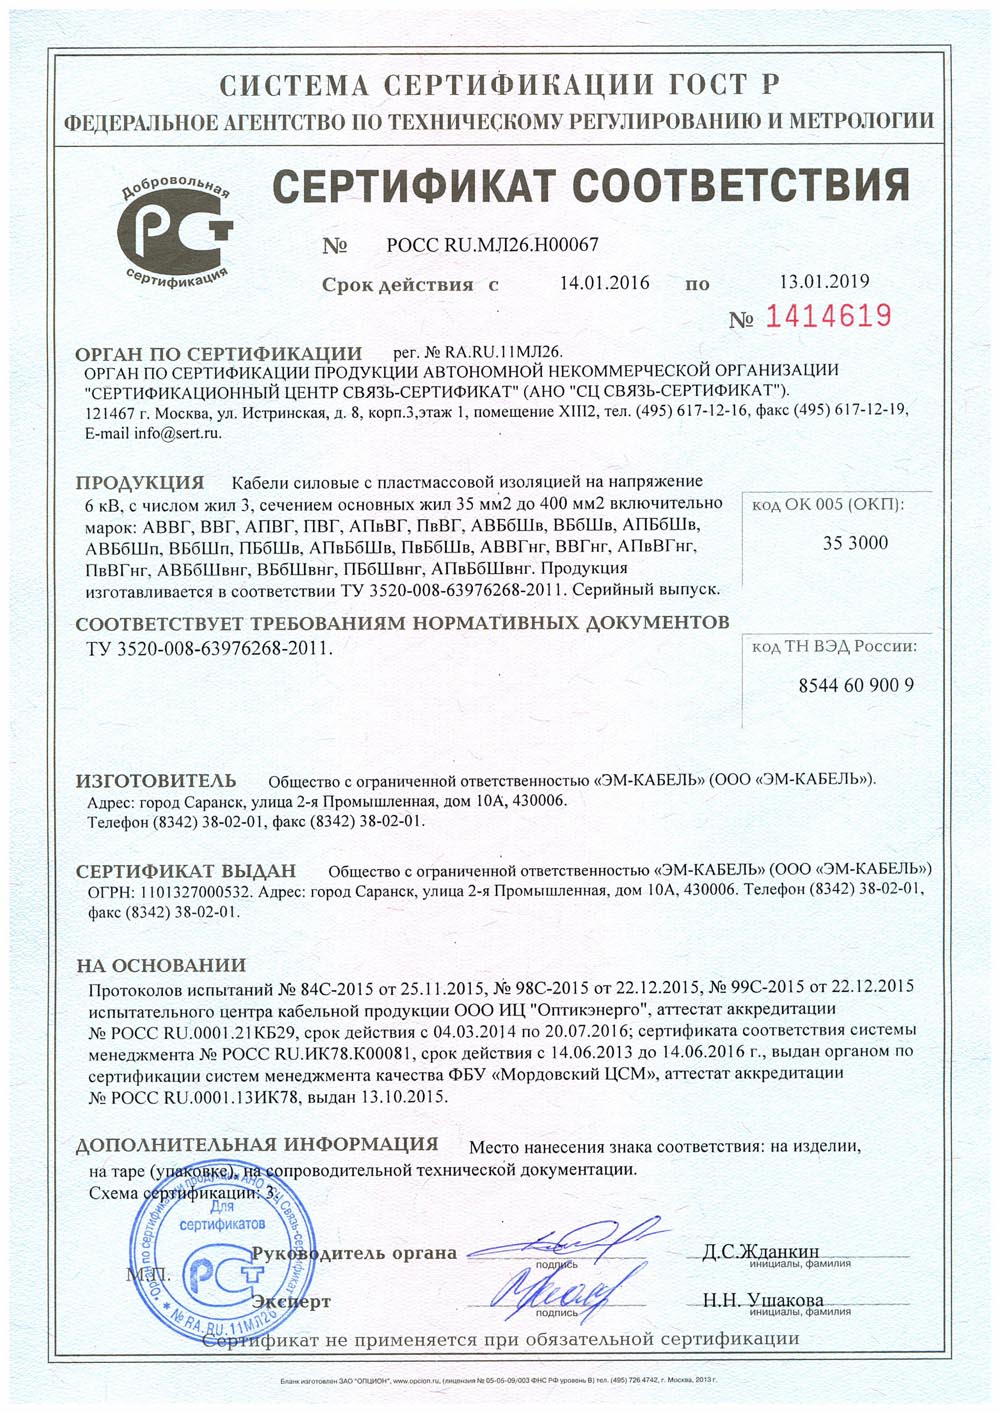 Сертификат соответствия кабелей АВВГНГ на напряжение 6 кВ